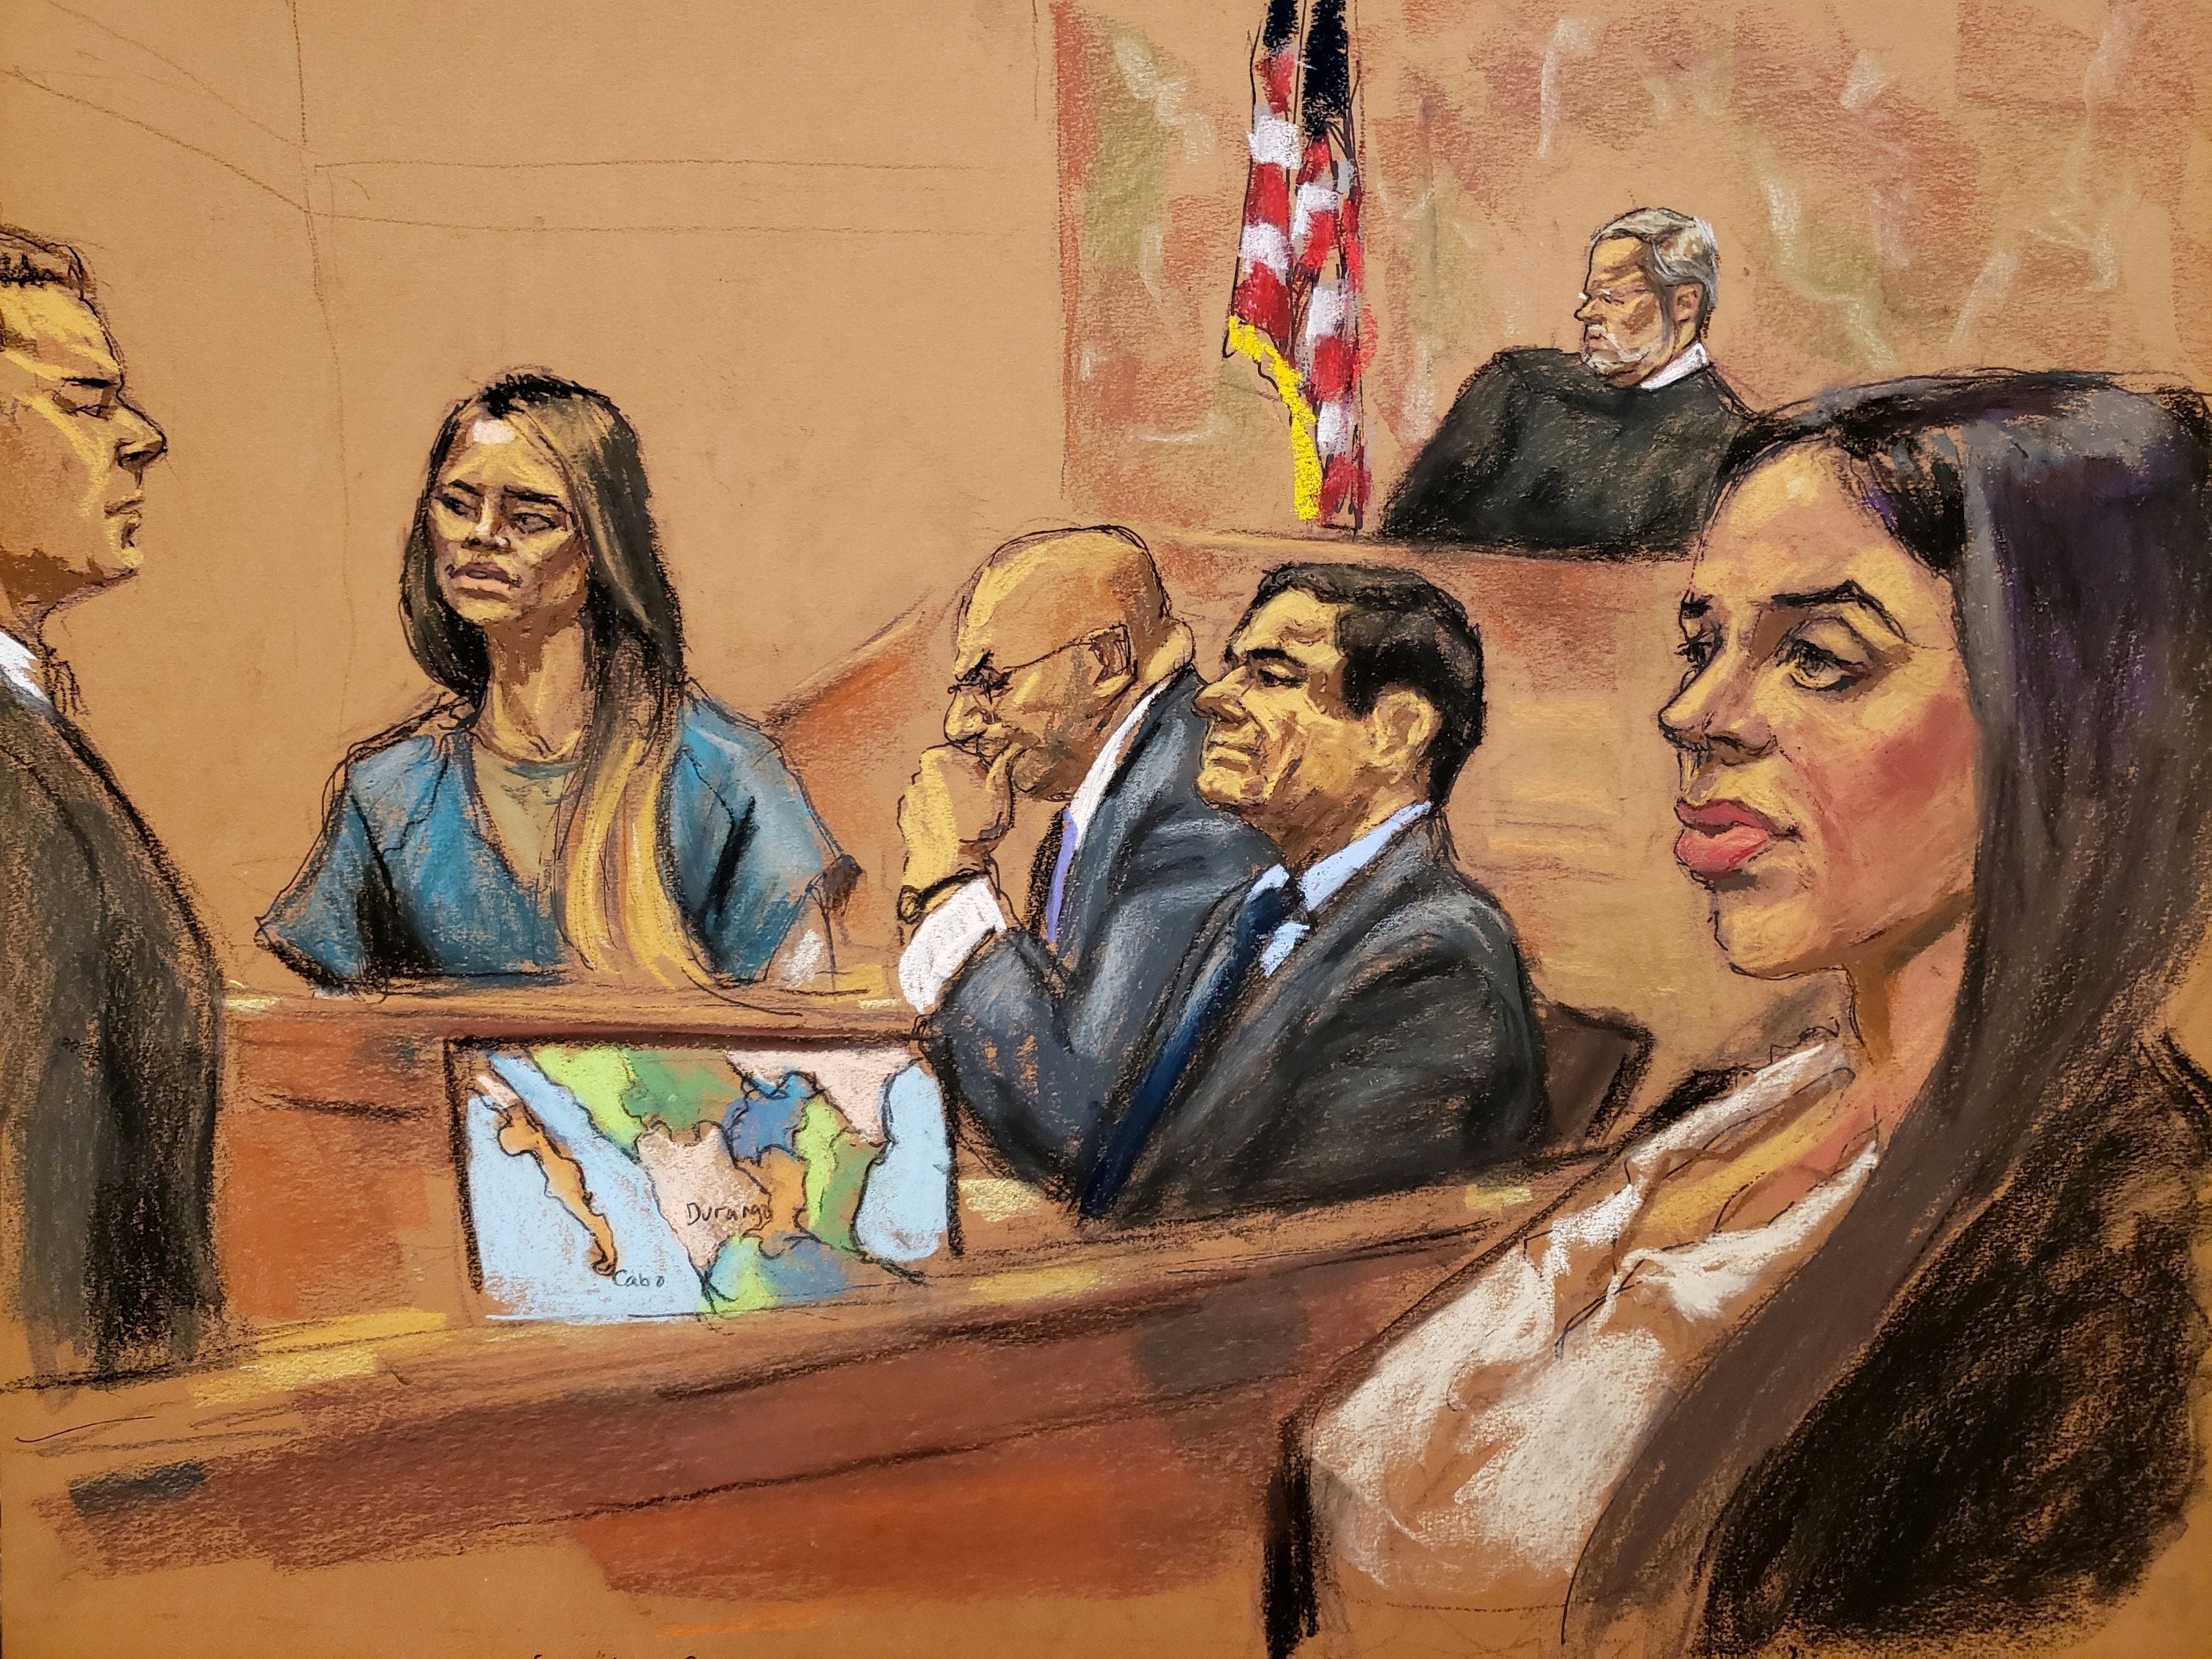 Lucero Guadalupe Sanchez Lopez se presentó en el juicio de "El Chapo" en 2019 en calidad de testigo colaborador (Foto:  REUTERS/Jane Rosenberg)